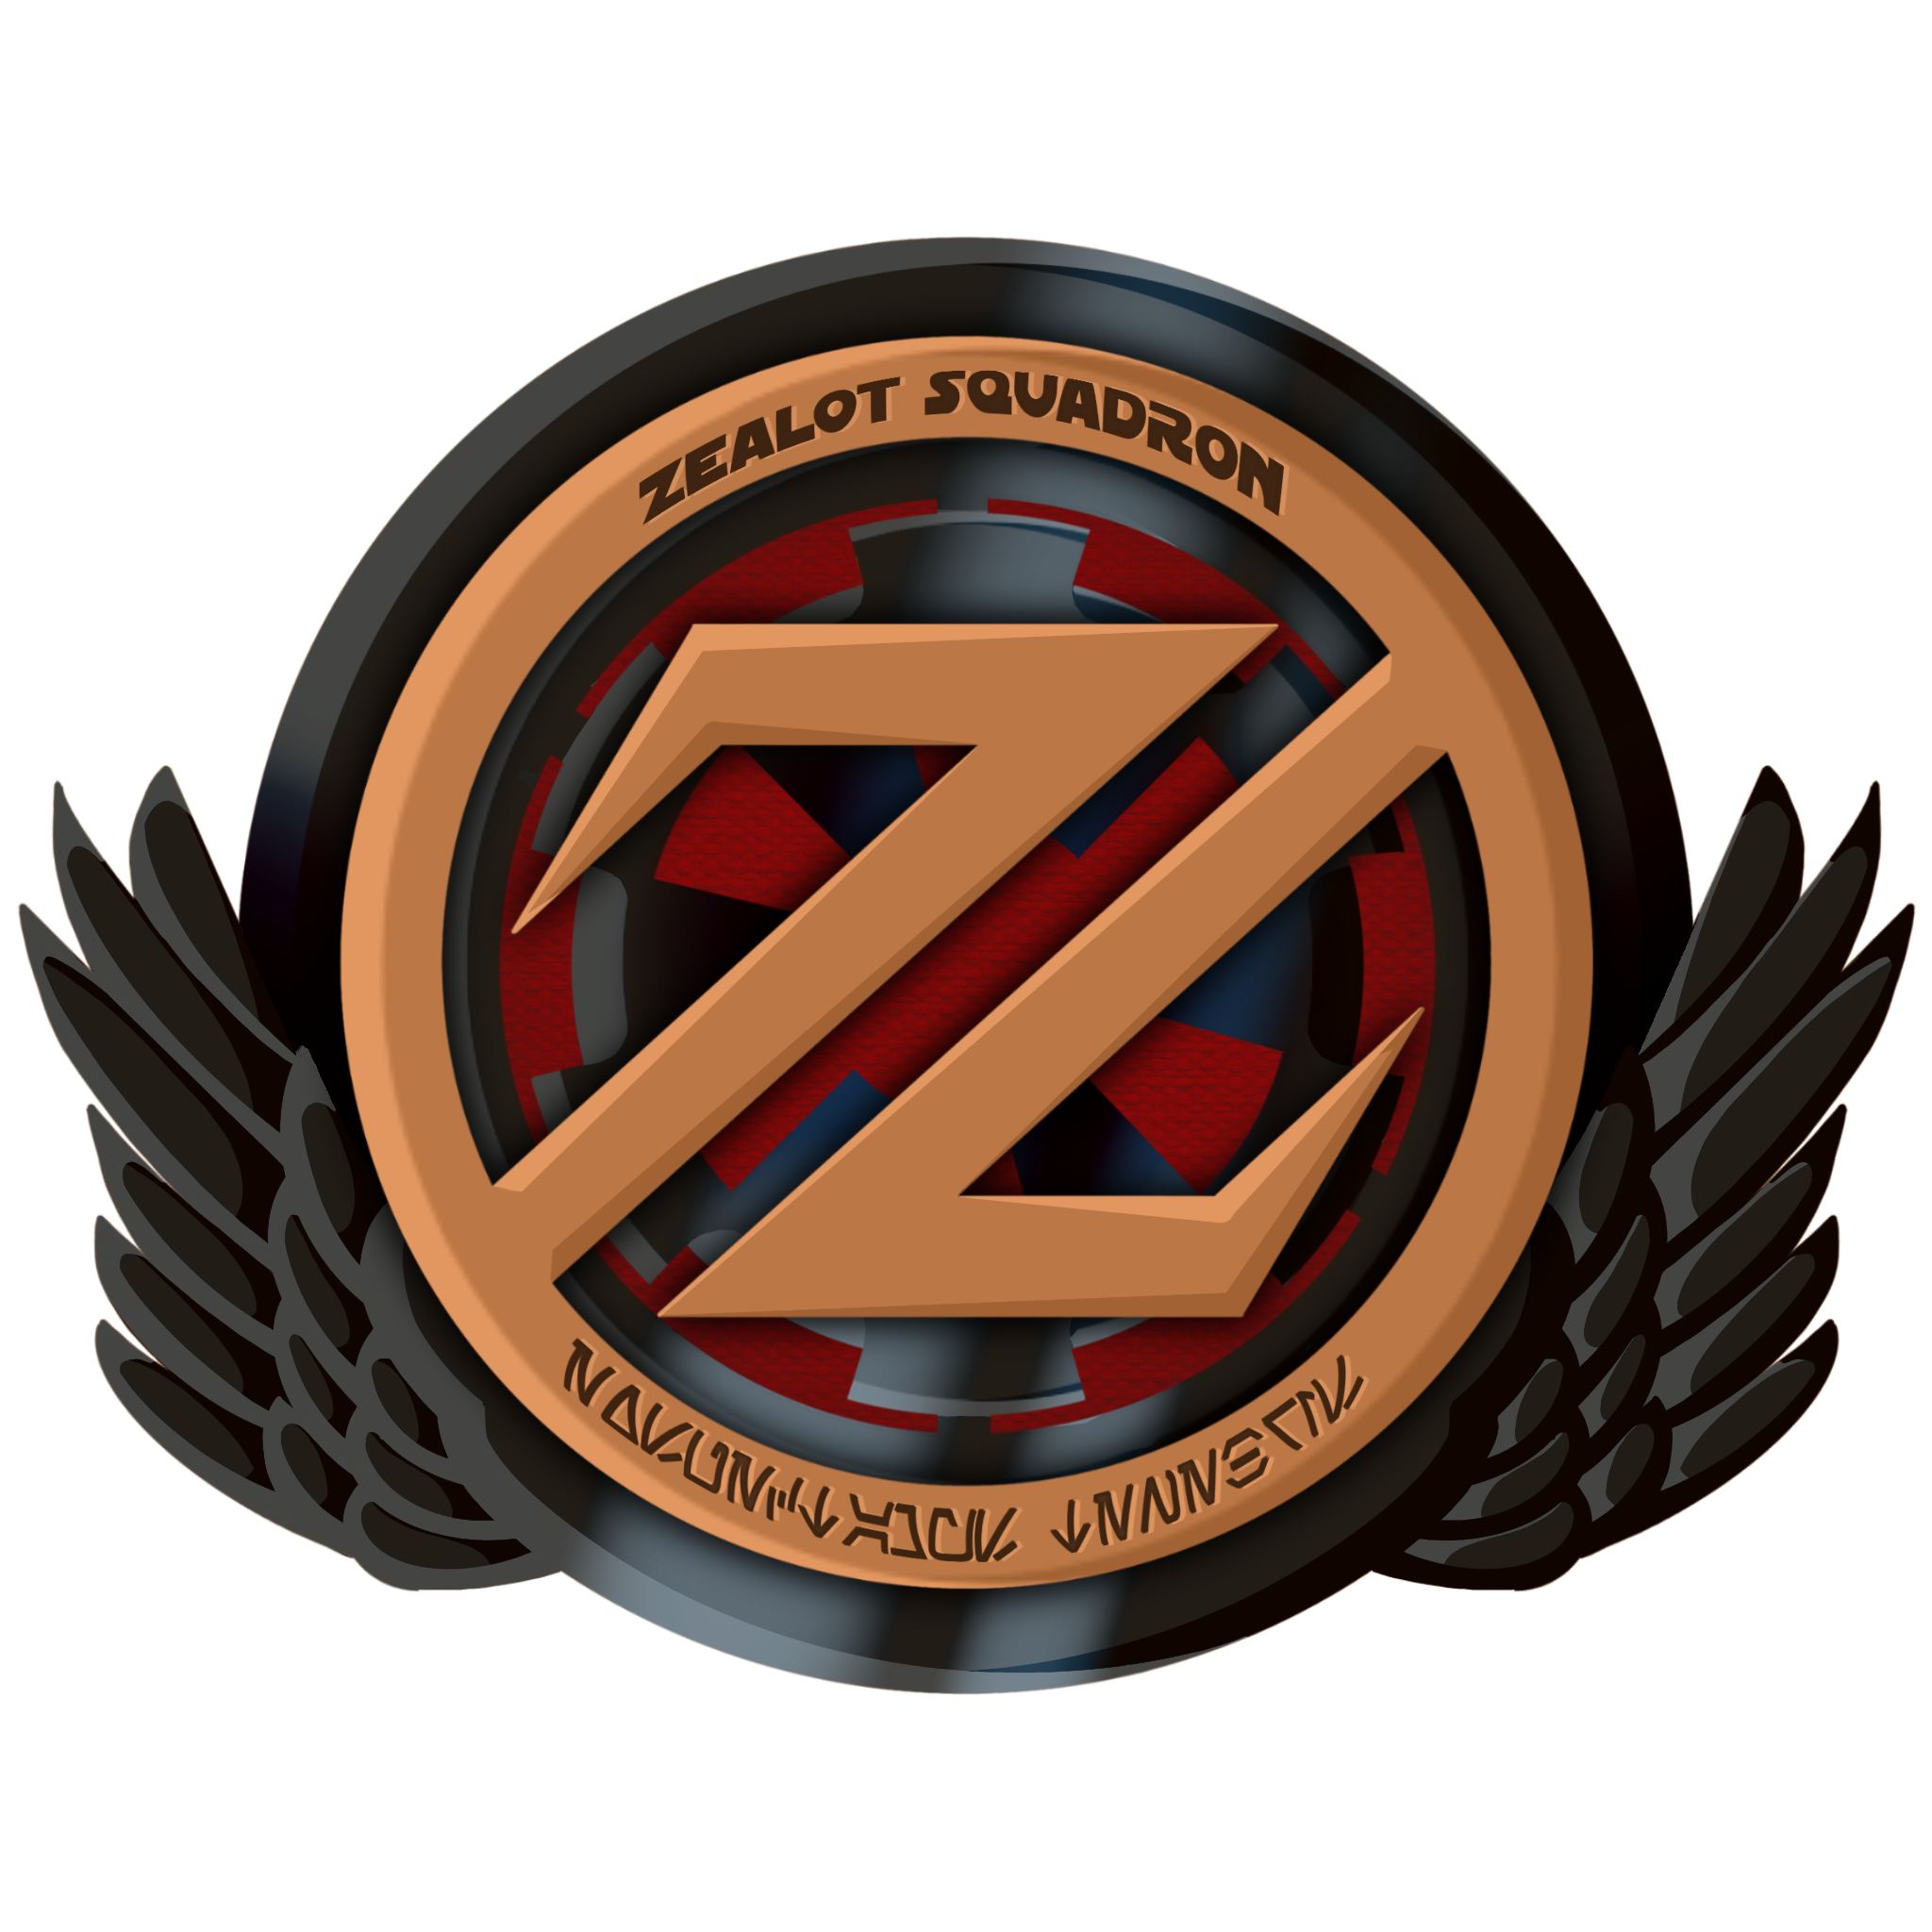 Zealot Squadron logo